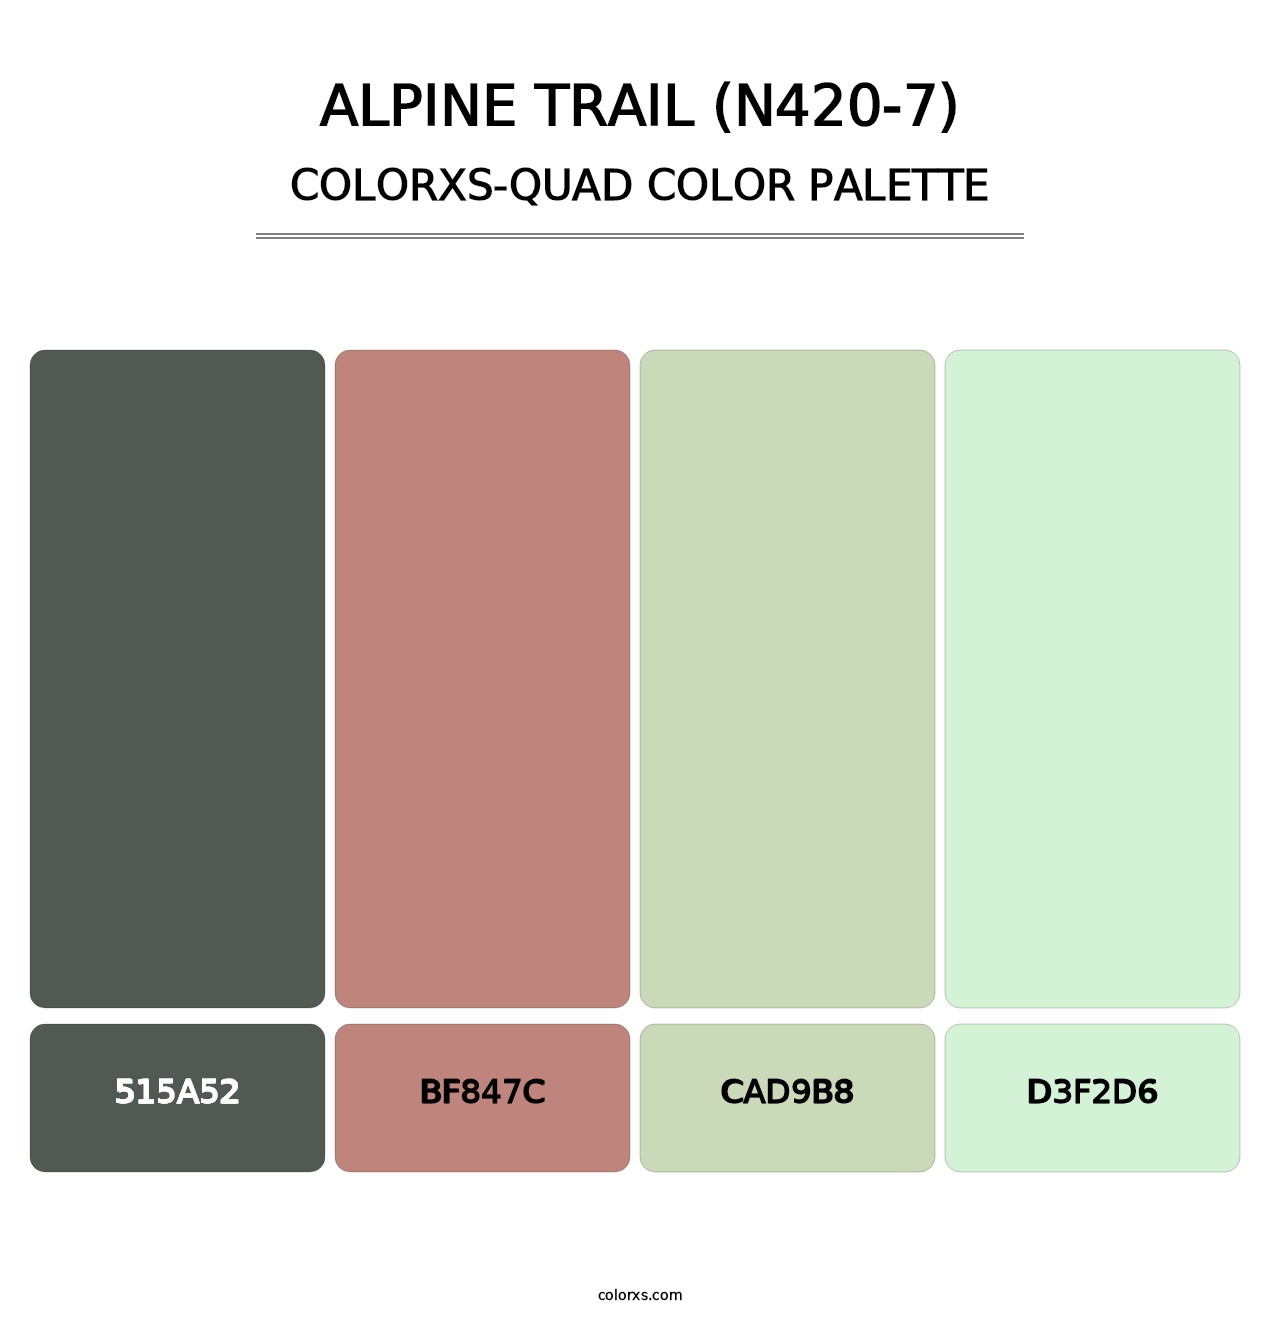 Alpine Trail (N420-7) - Colorxs Quad Palette